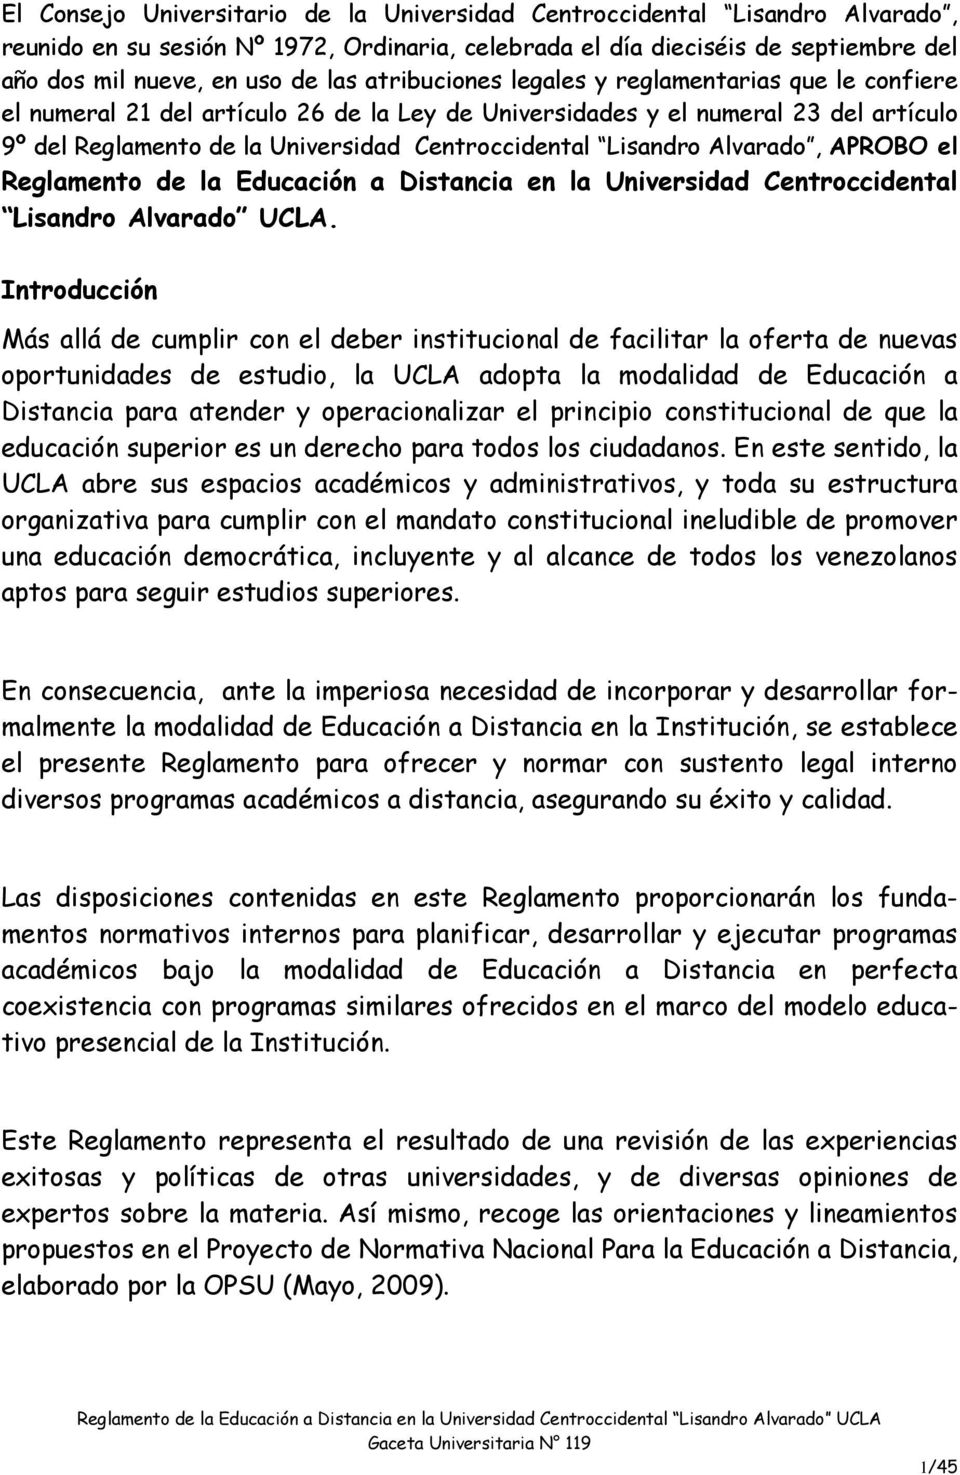 Lisandro Alvarado, APROBO el Reglamento de la Educación a Distancia en la Universidad Centroccidental Lisandro Alvarado UCLA.